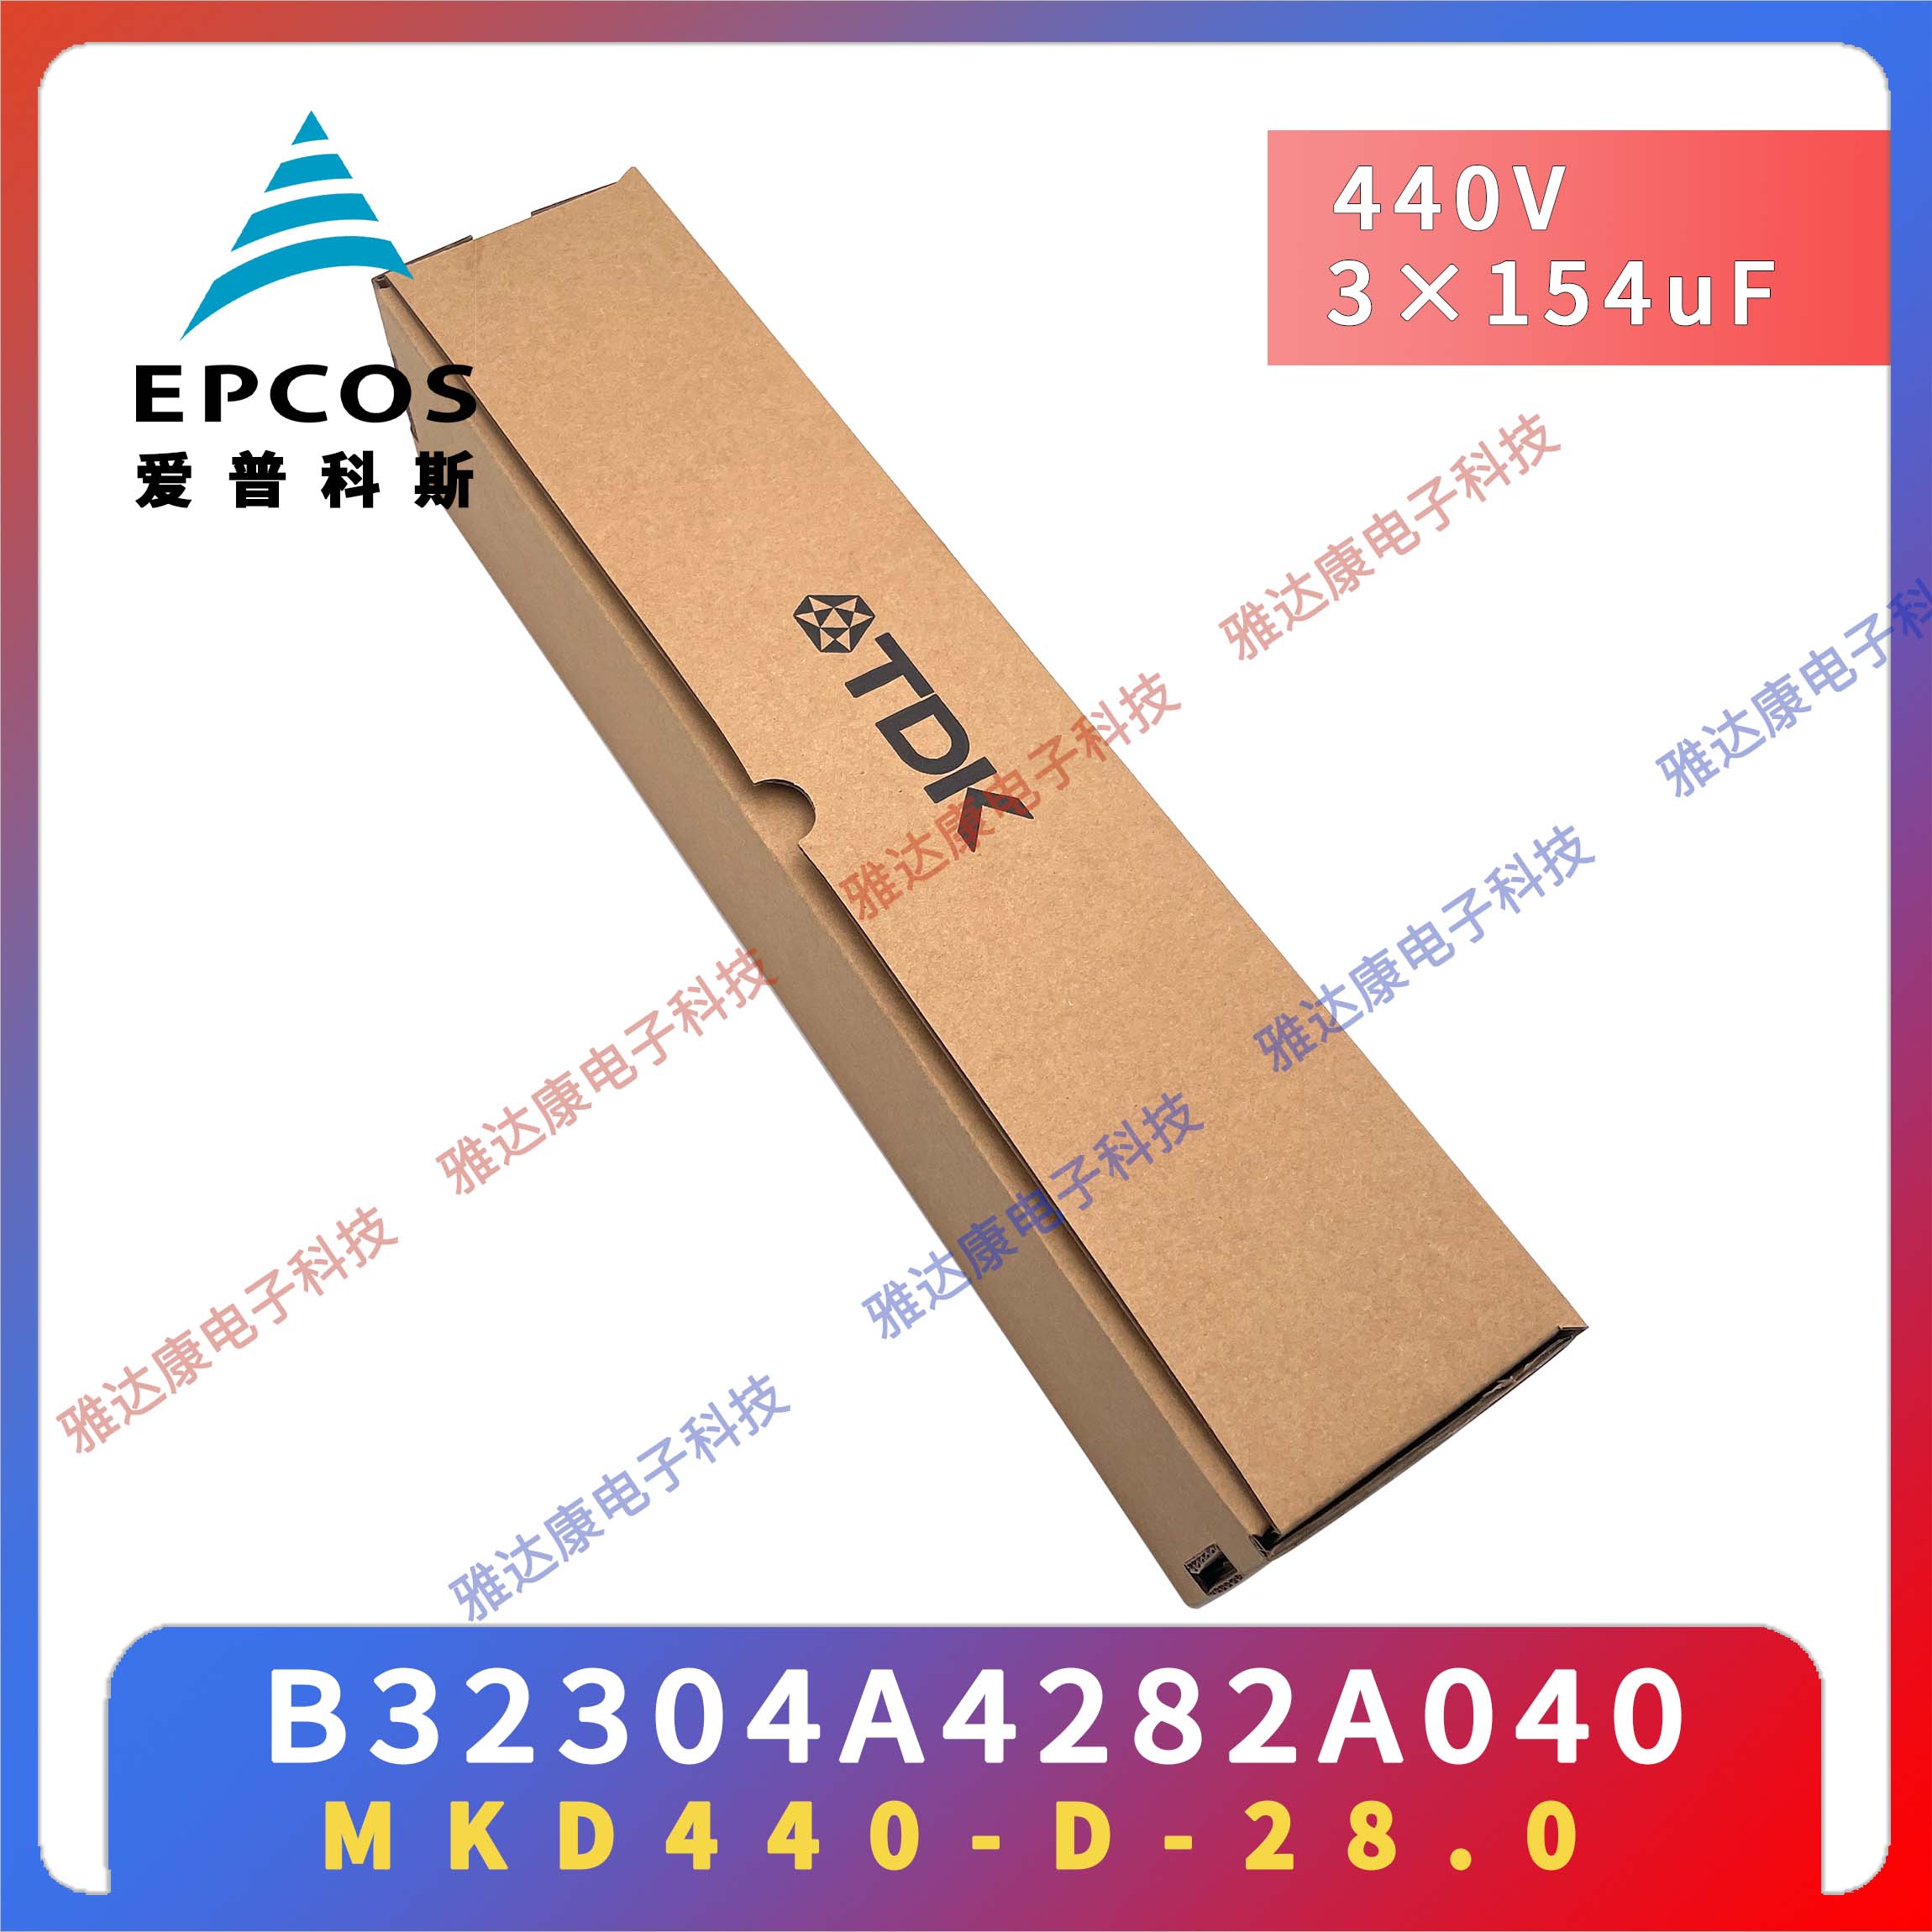 EPCOS电容器MKK480-D-16.7升级MKK525-D-20.8西门子爱普科斯电力电容原盒图片